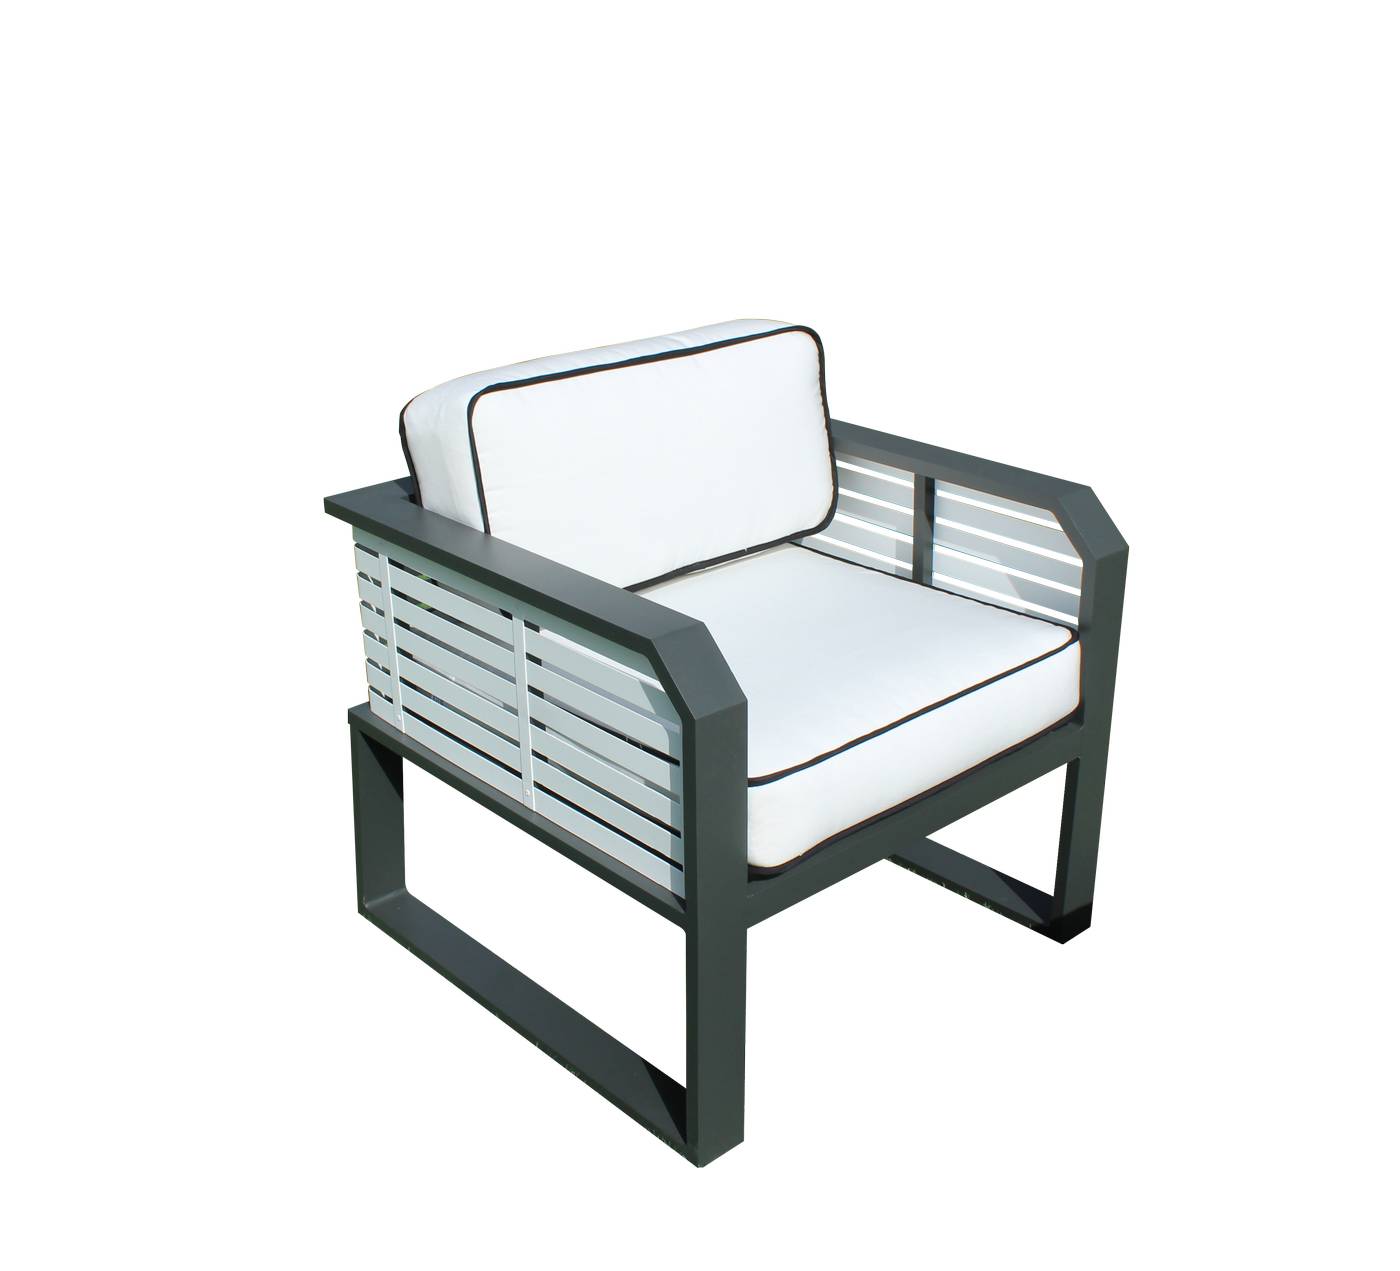 Coqueto sillón relax de alumnio bicolor, con cojines gran confort desenfundables.